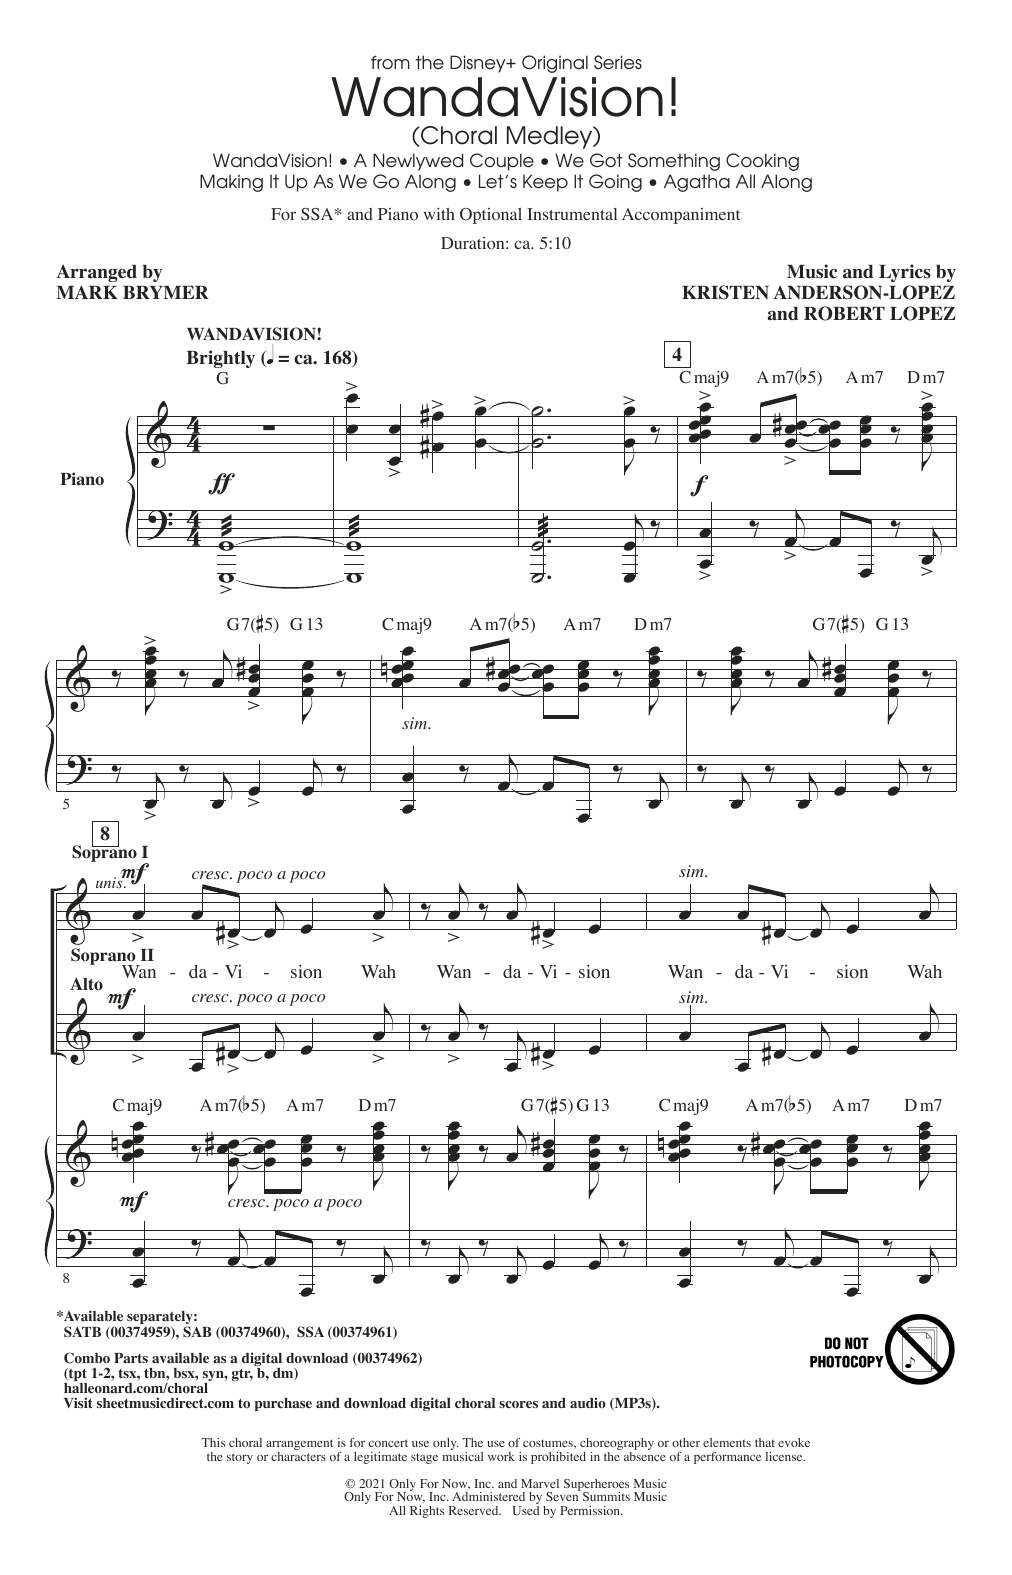 WandaVision! (Choral Medley) (arr. Mark Brymer) (SSA Choir) von Kristen Anderson-Lopez & Robert Lopez